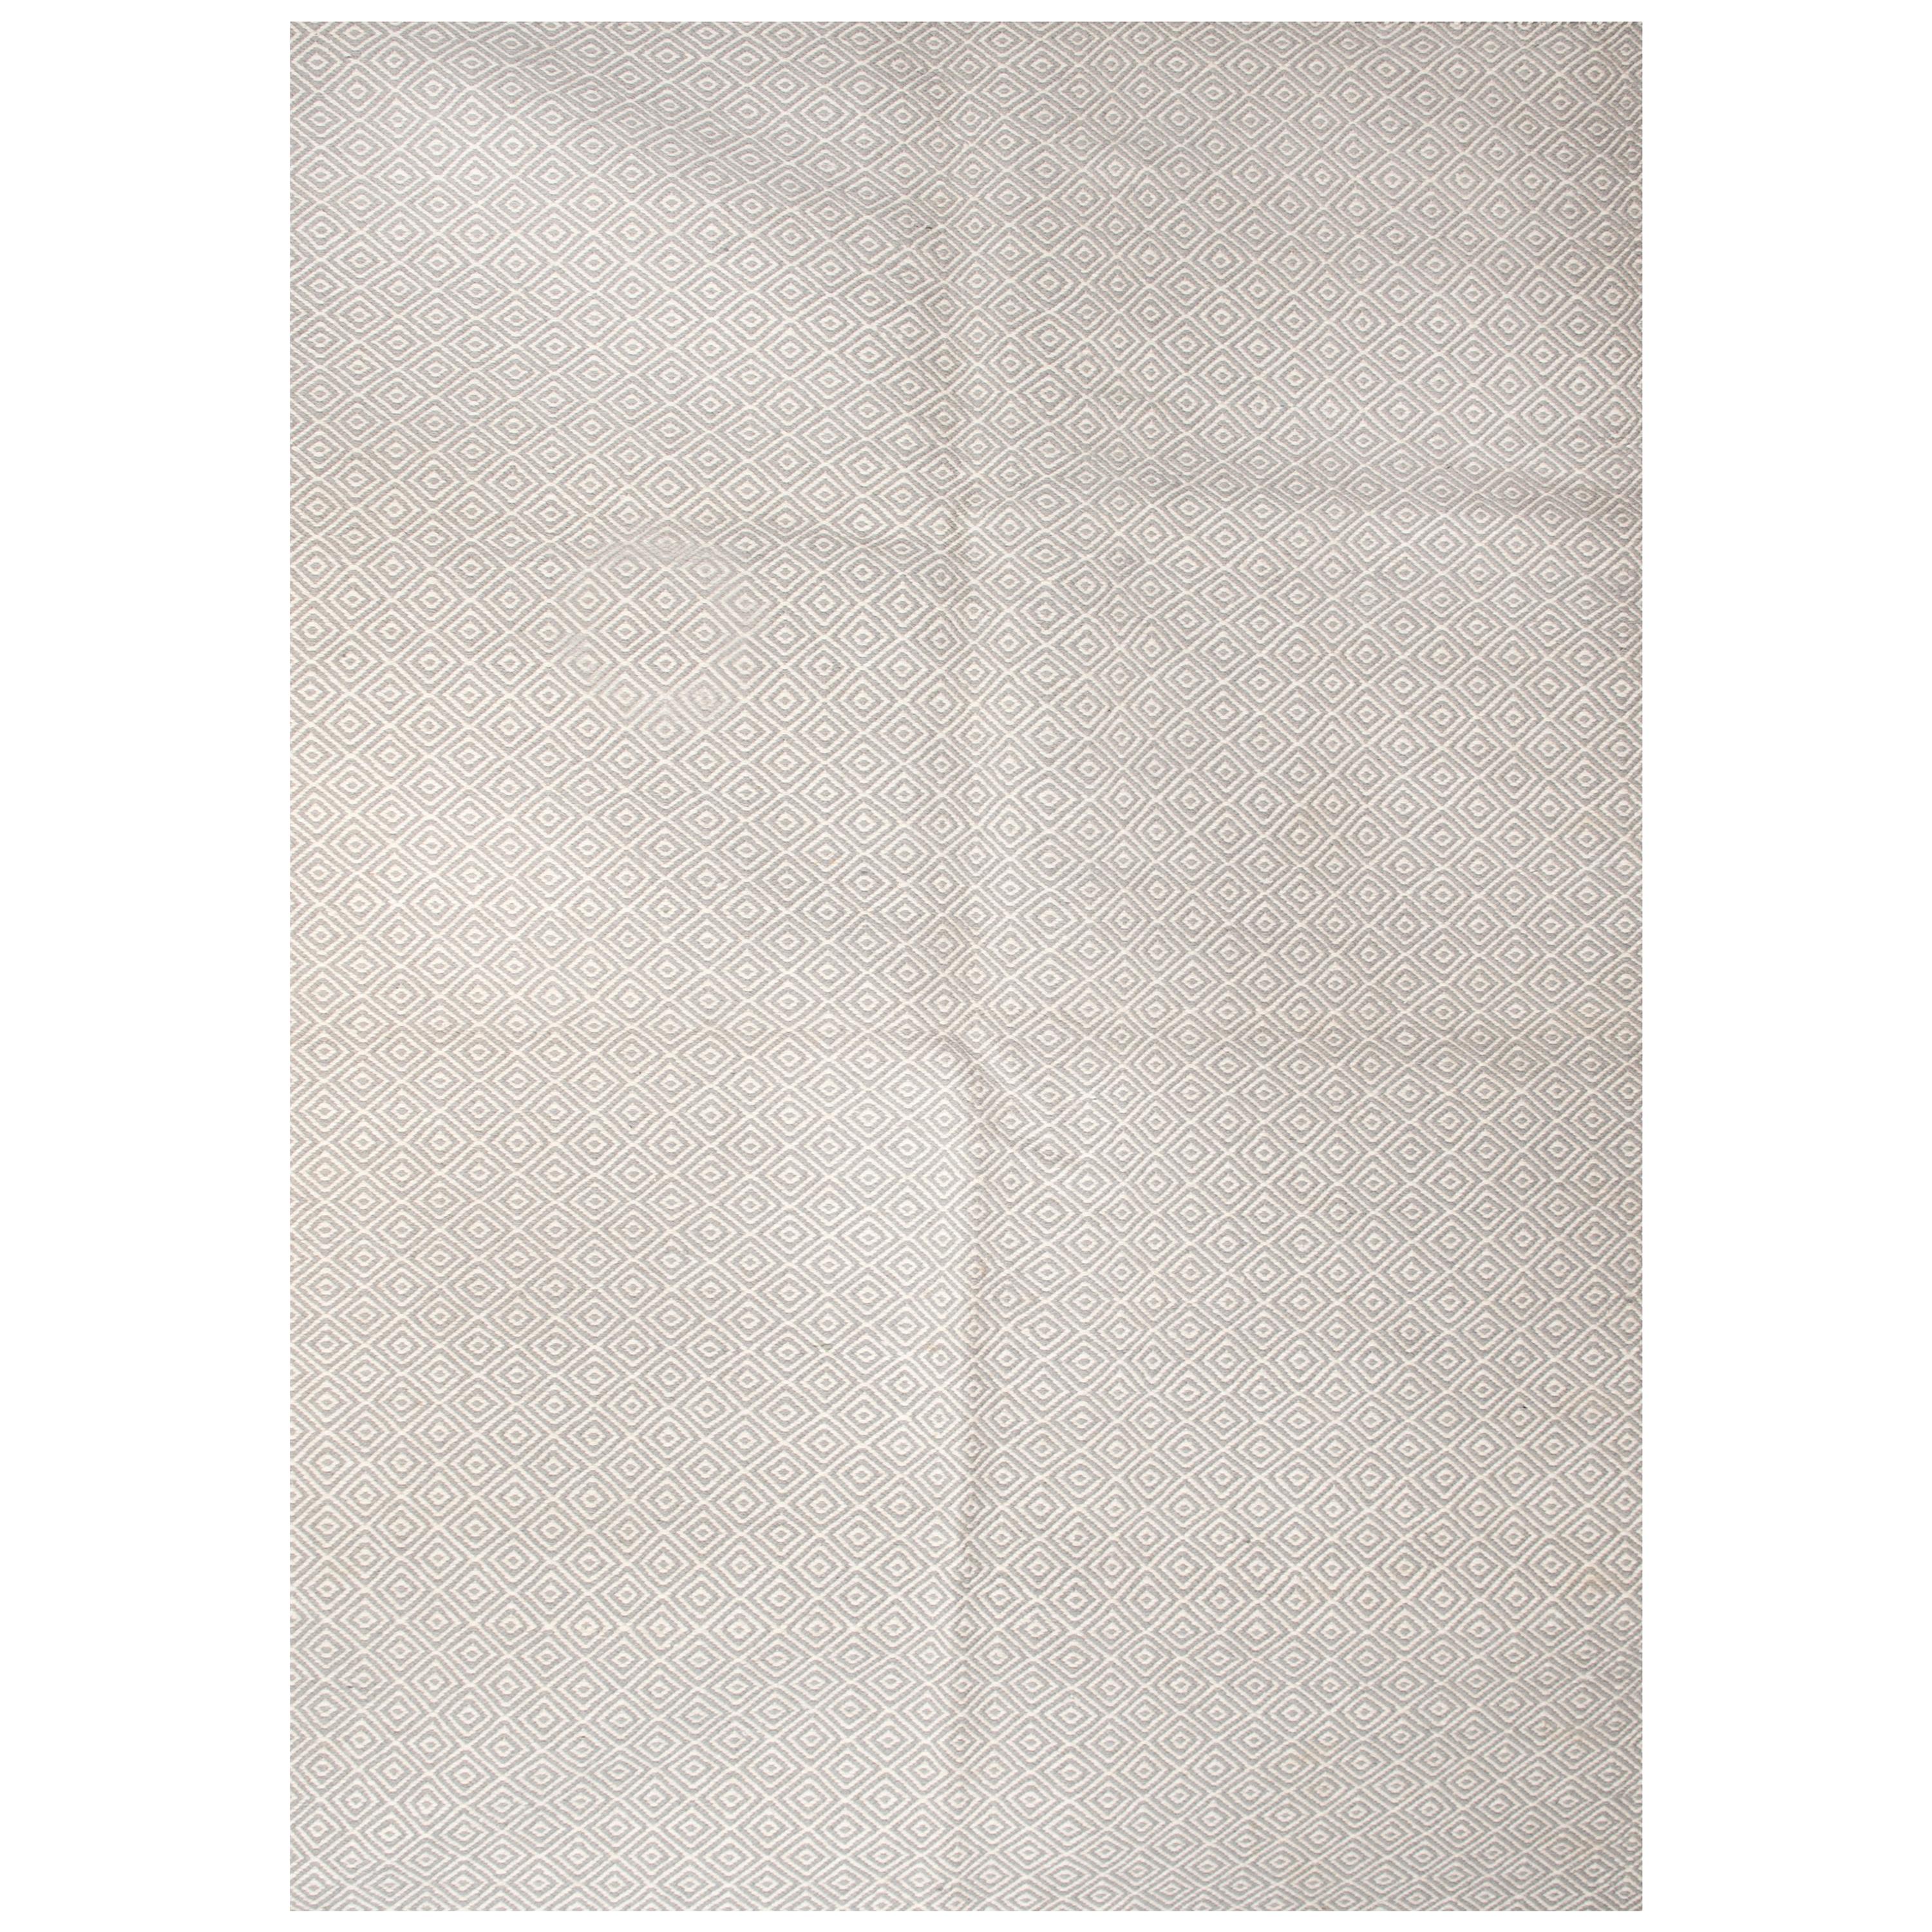 Tapis moderne en laine tissé à la main gris clair et blanc à petit motif en forme de losange